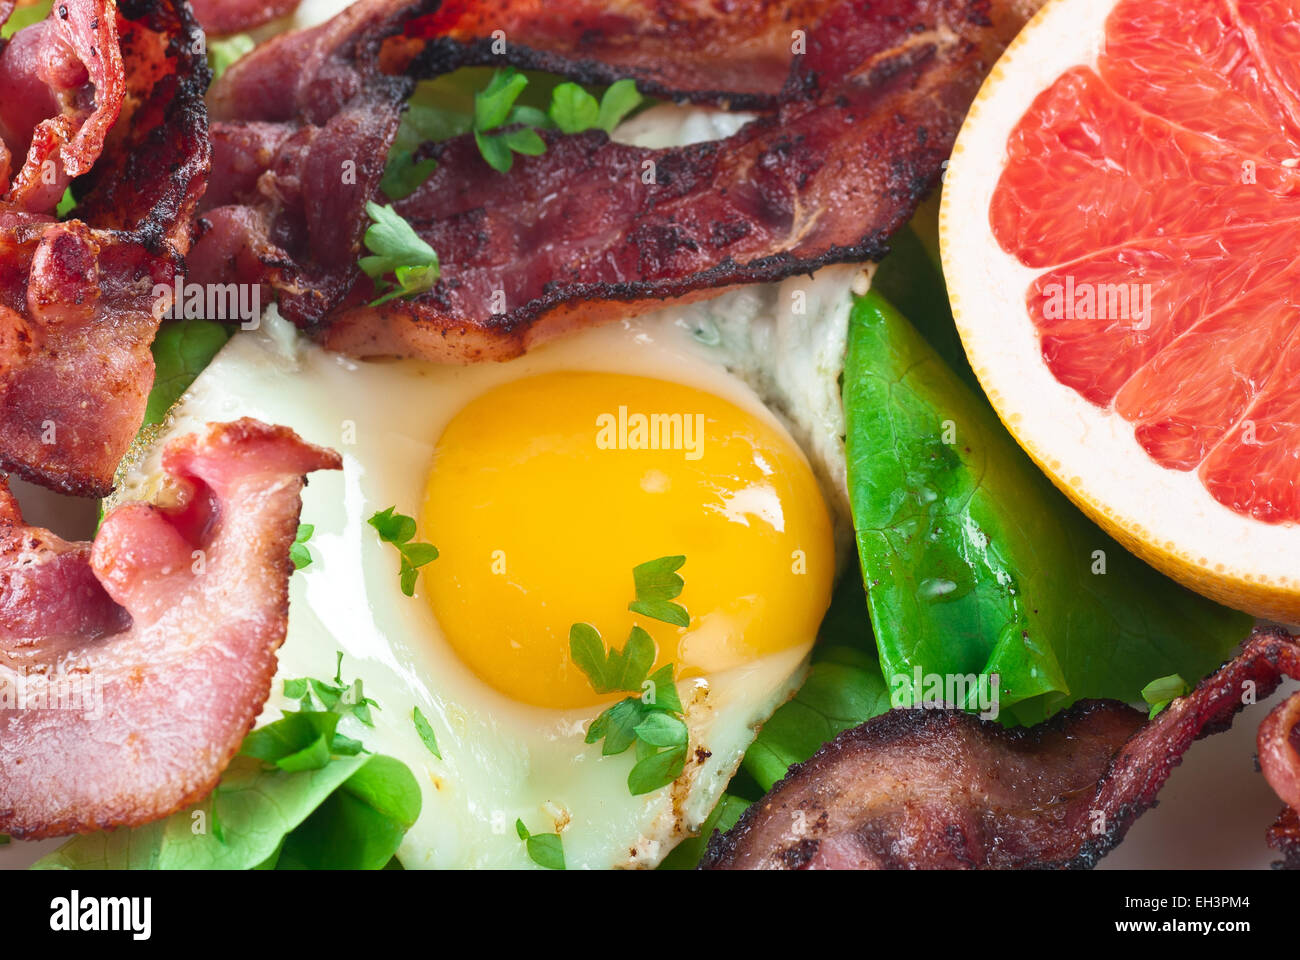 Spiegelei mit Speck, Salat und Grapefruit Stockfotografie - Alamy